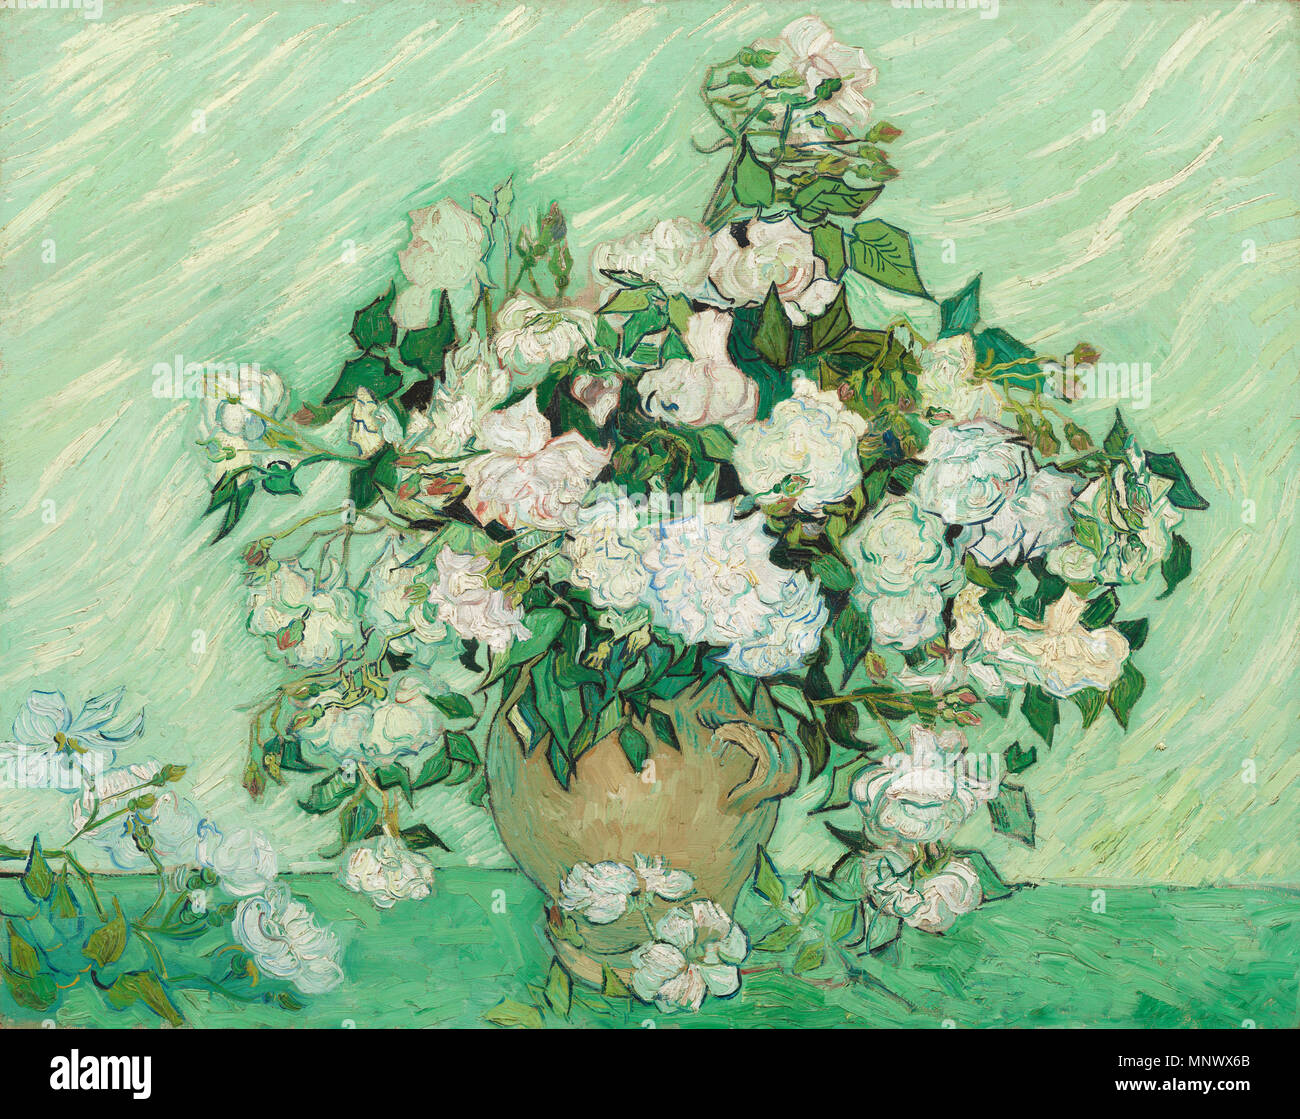 Peinture ; huile sur toile ; Total : 71 x 90 cm (27 15/16 x 35 7/16 po.) ; Anglais : Roses 1890. 1073 Roses - Vincent van Gogh Banque D'Images